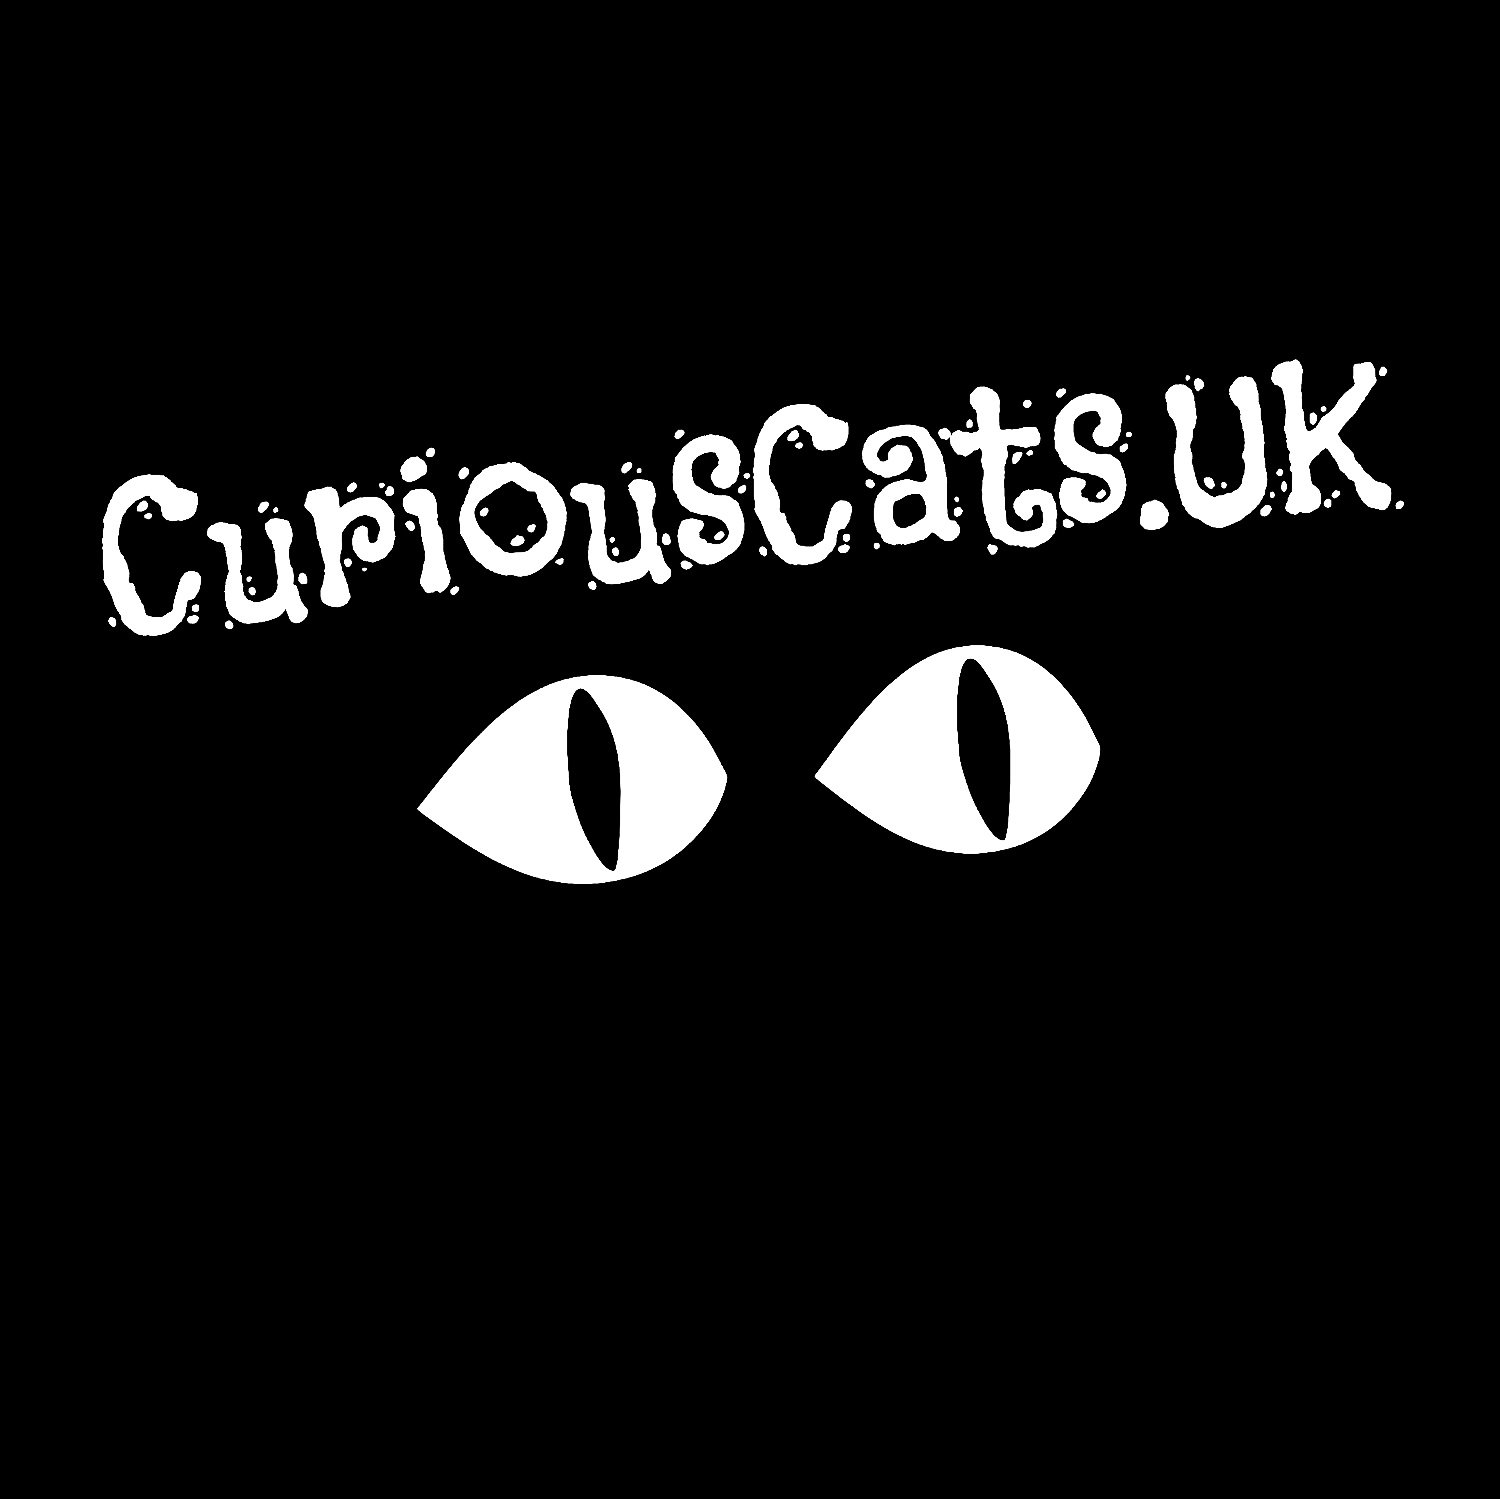 Curious Cats UK